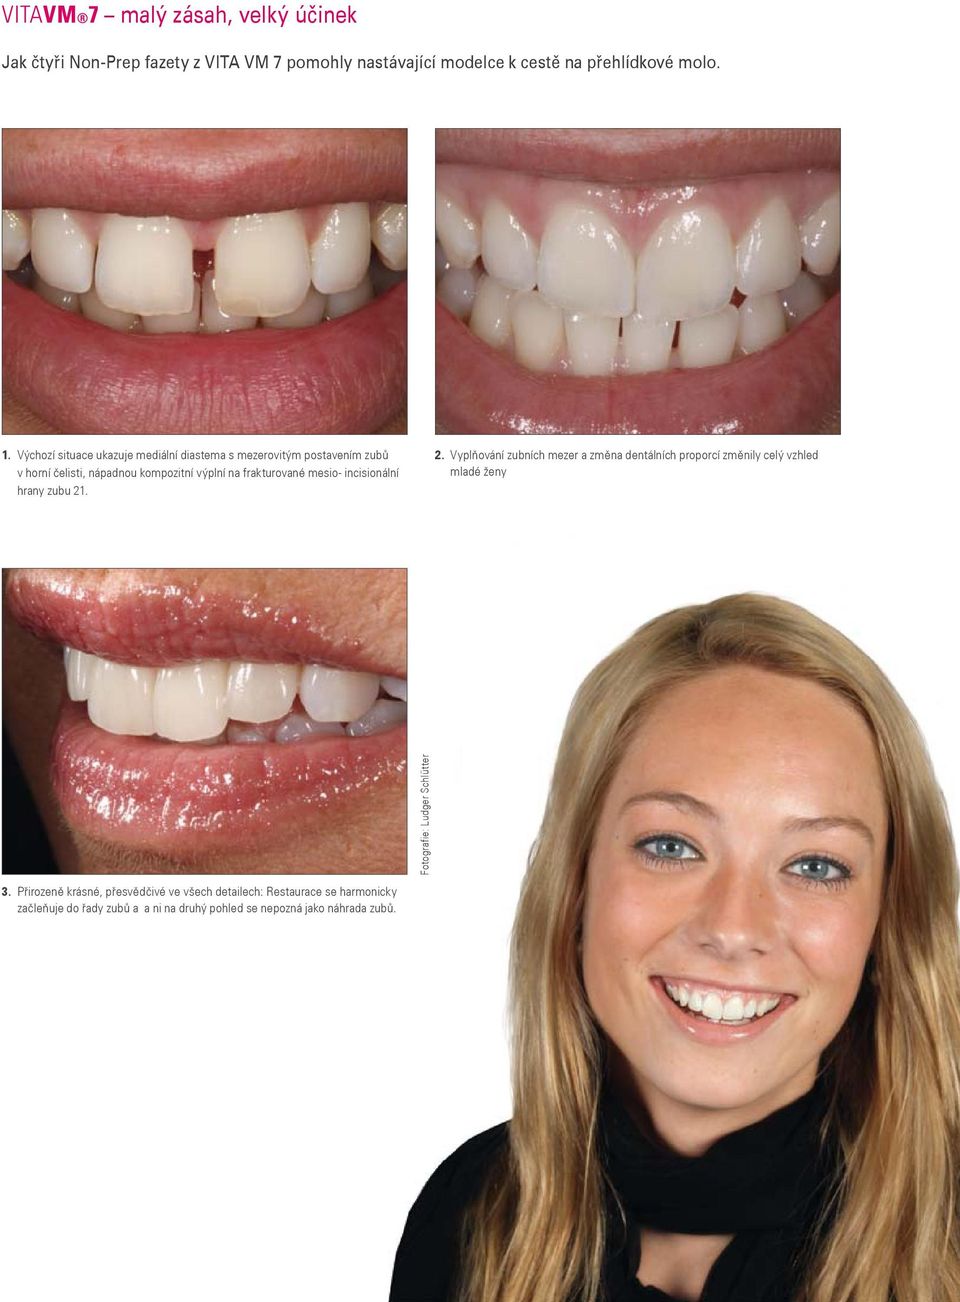 incisionální hrany zubu 21. 2. Vyplňování zubních mezer a změna dentálních proporcí změnily celý vzhled mladé ženy Fotografie: Ludger Schlütter 3.